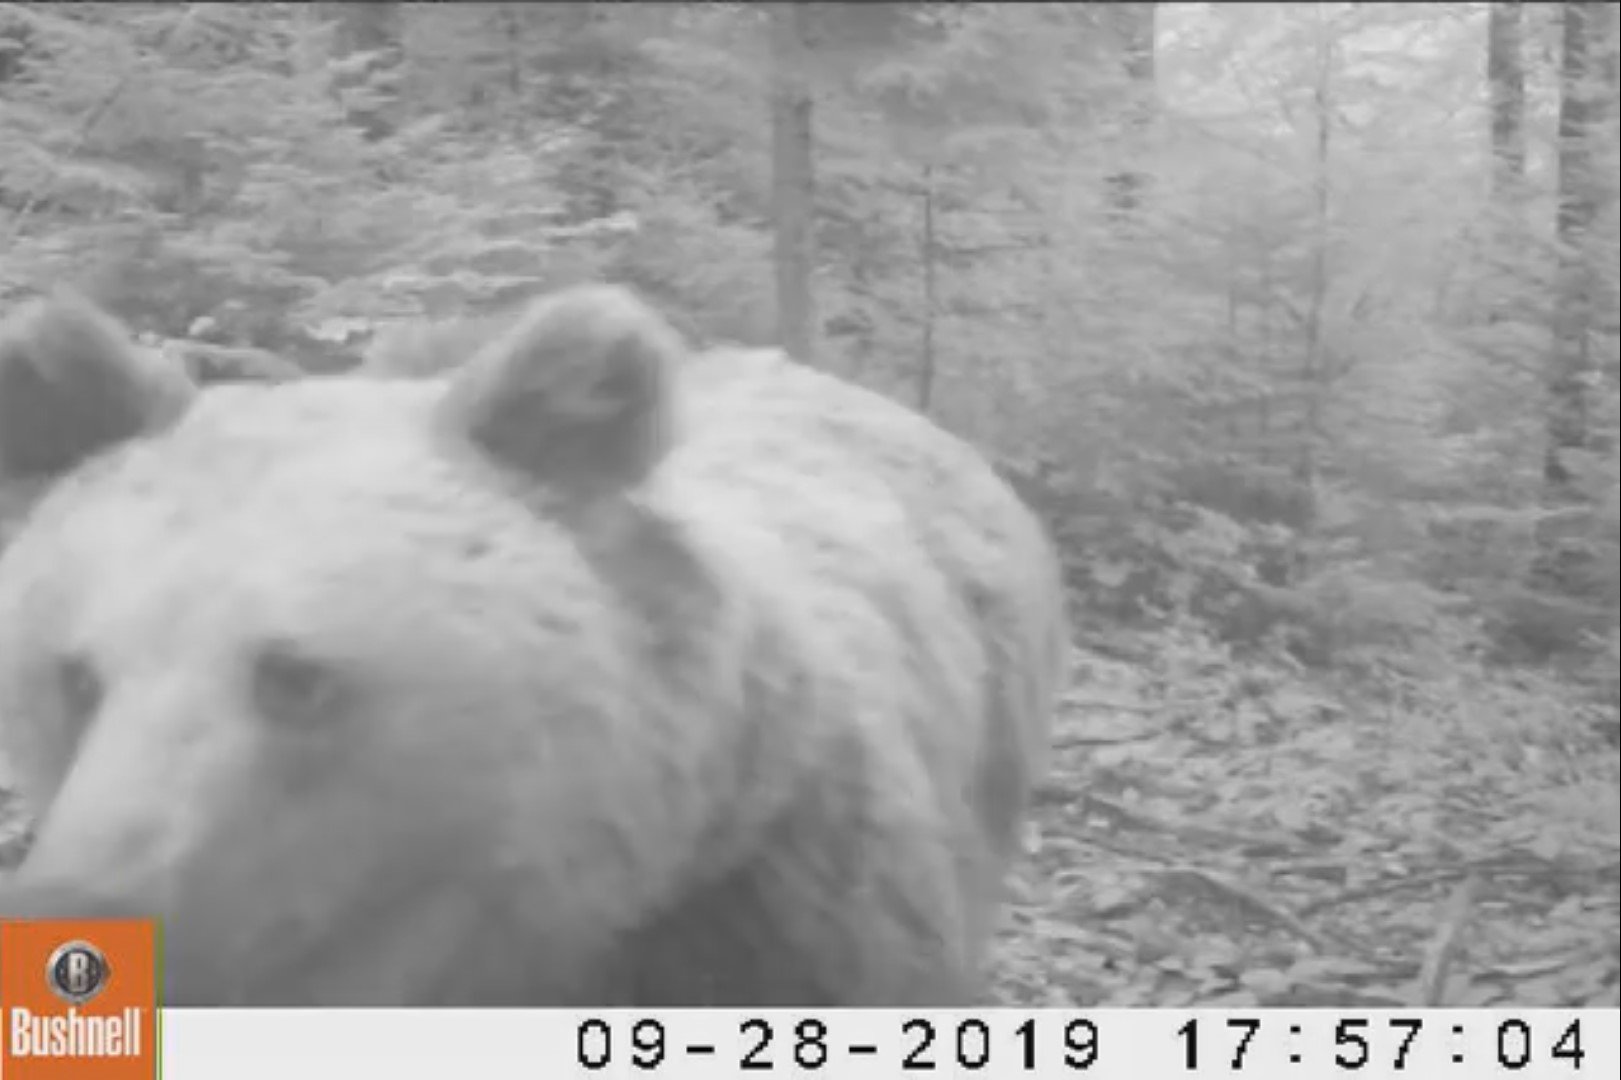  Ce se întâmplă când un urs descoperă o cameră de monitorizare? Imagini inedite